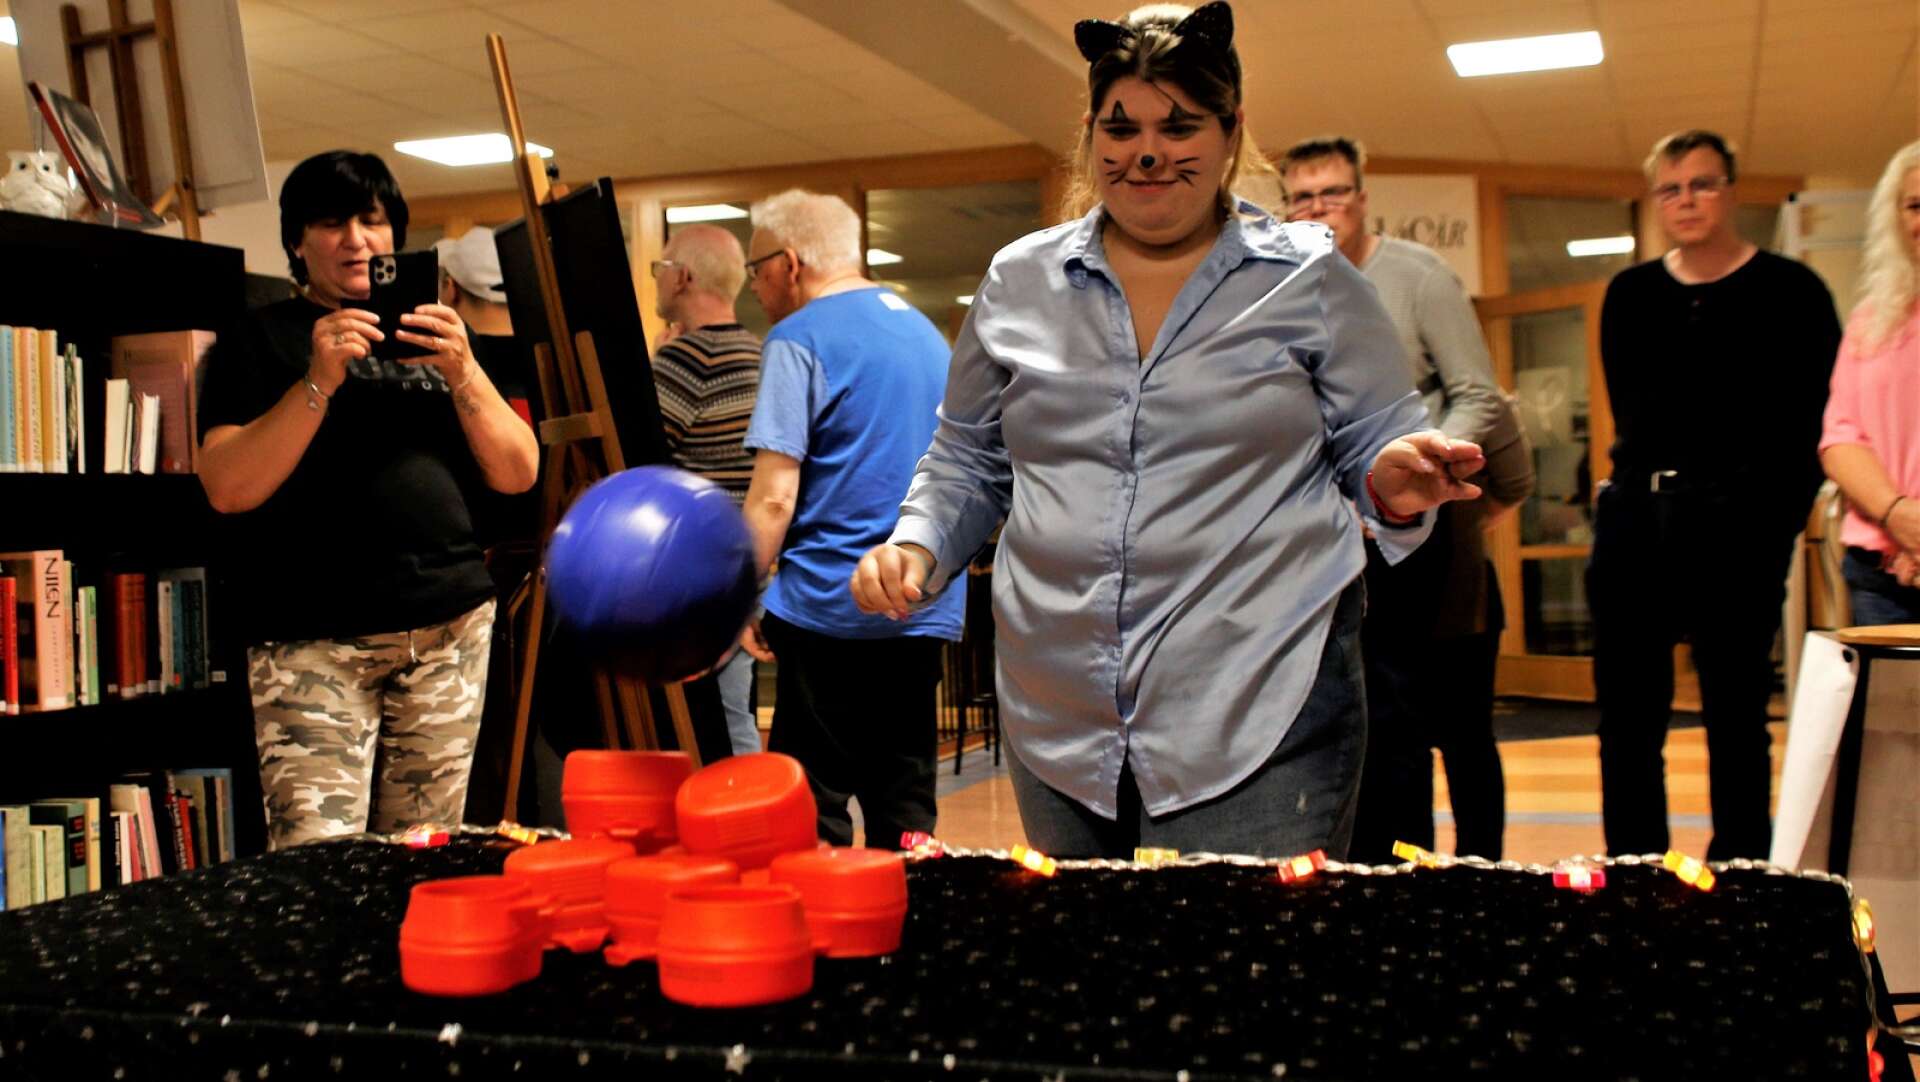 Anita Elshani tar en boll. Hon siktar och kastar och burkarna på bordet far i golvet. 